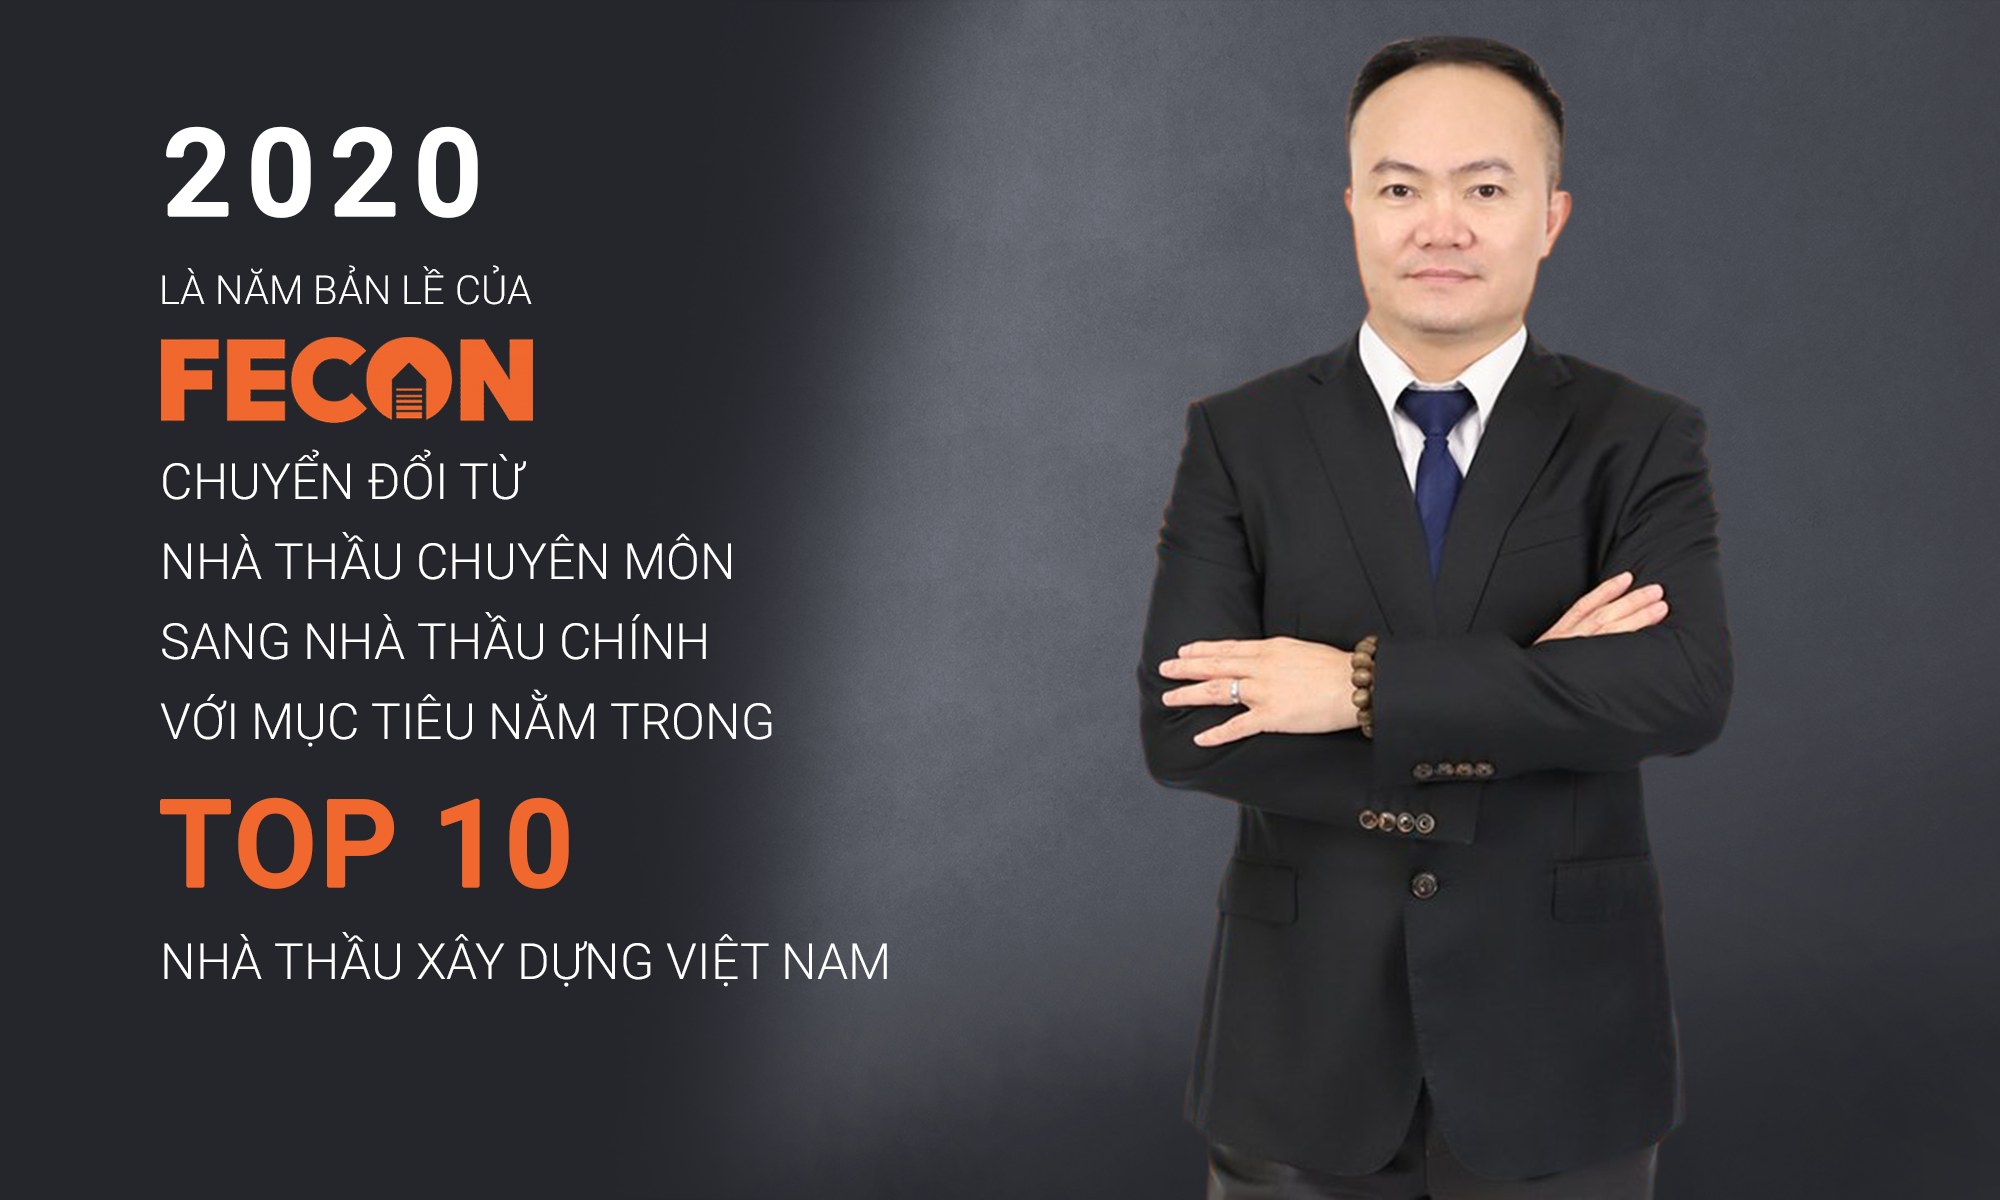 FECON đặt mục tiêu trở thành Tập đoàn xây dựng và phát triển hạ tầng hàng đầu tại Việt Nam vào năm 2025.